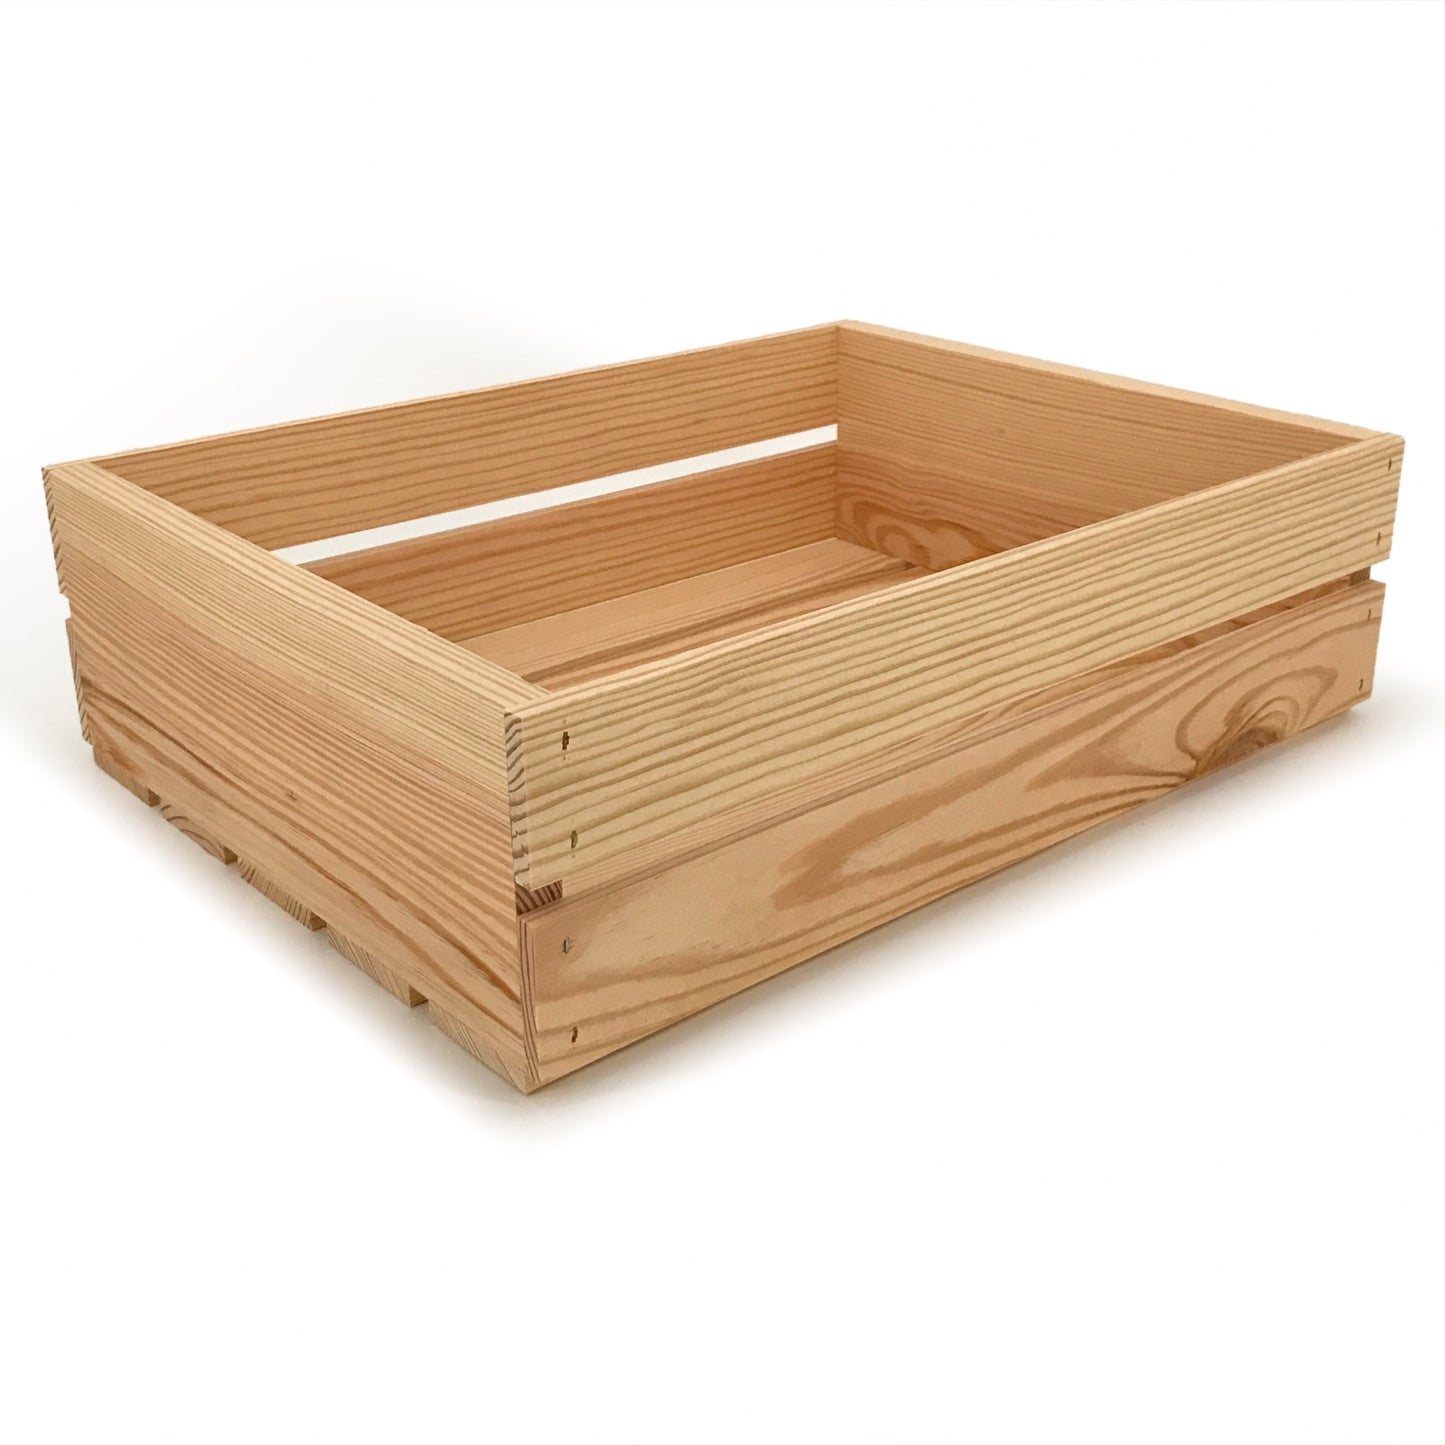 Small wooden crate 18x14x5.25, 6-WS-18-14-5.25-NX-NW-NL, 12-WS-18-14-5.25-NX-NW-NL, 24-WS-18-14-5.25-NX-NW-NL, 48-WS-18-14-5.25-NX-NW-NL, 96-WS-18-14-5.25-NX-NW-NL